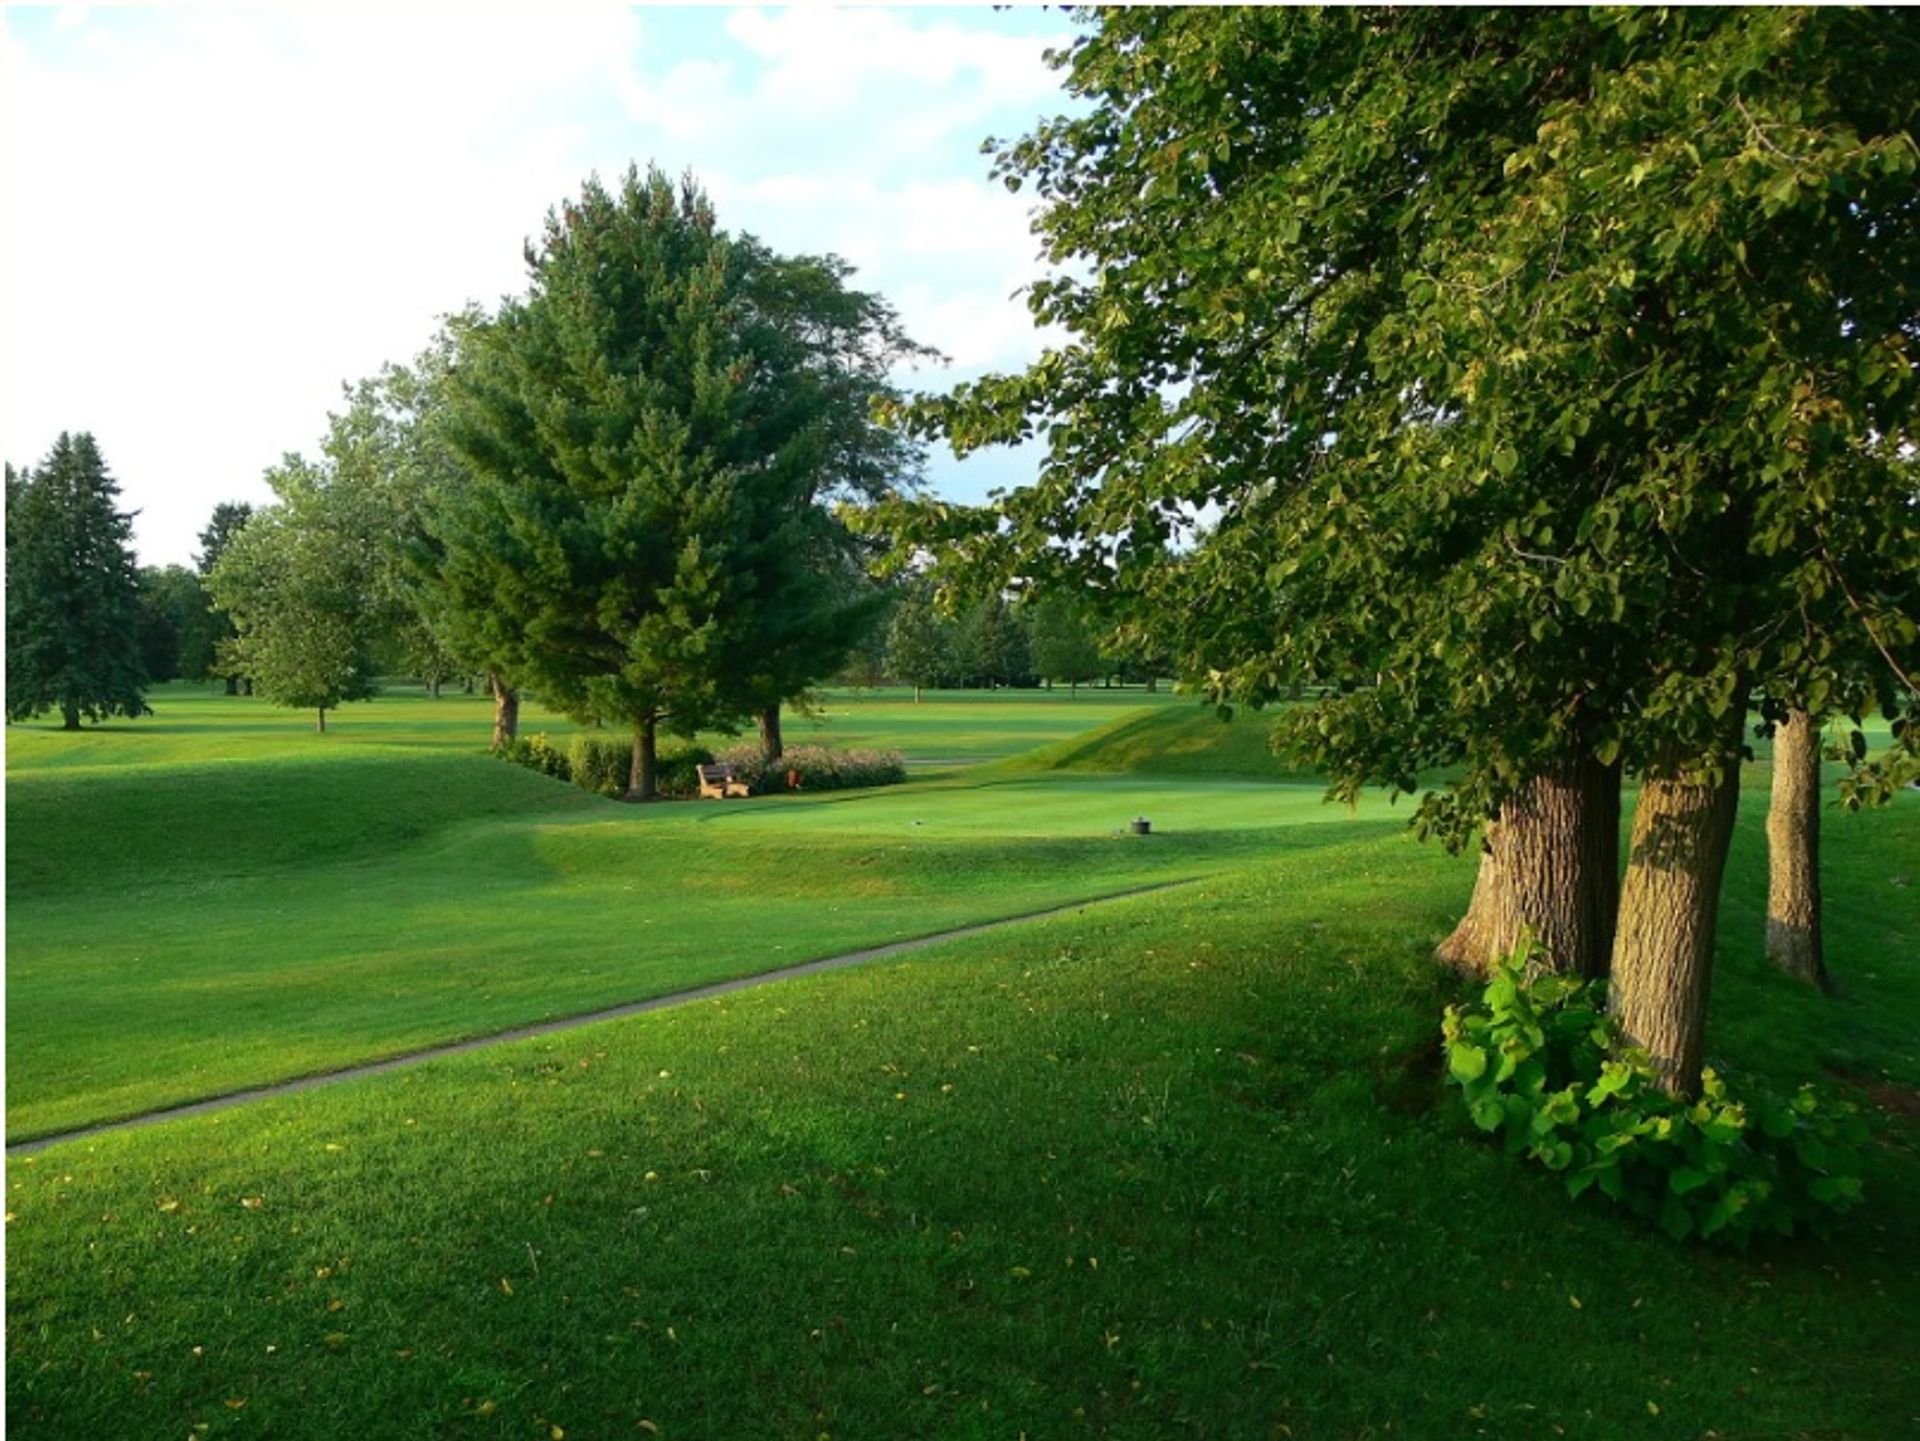 מבט על תלי העפר של אוקטגון בניוארק, אוהיו, שיוסבו ממגרש גולף לפארק ציבורי

ויקימדיה קומונס.